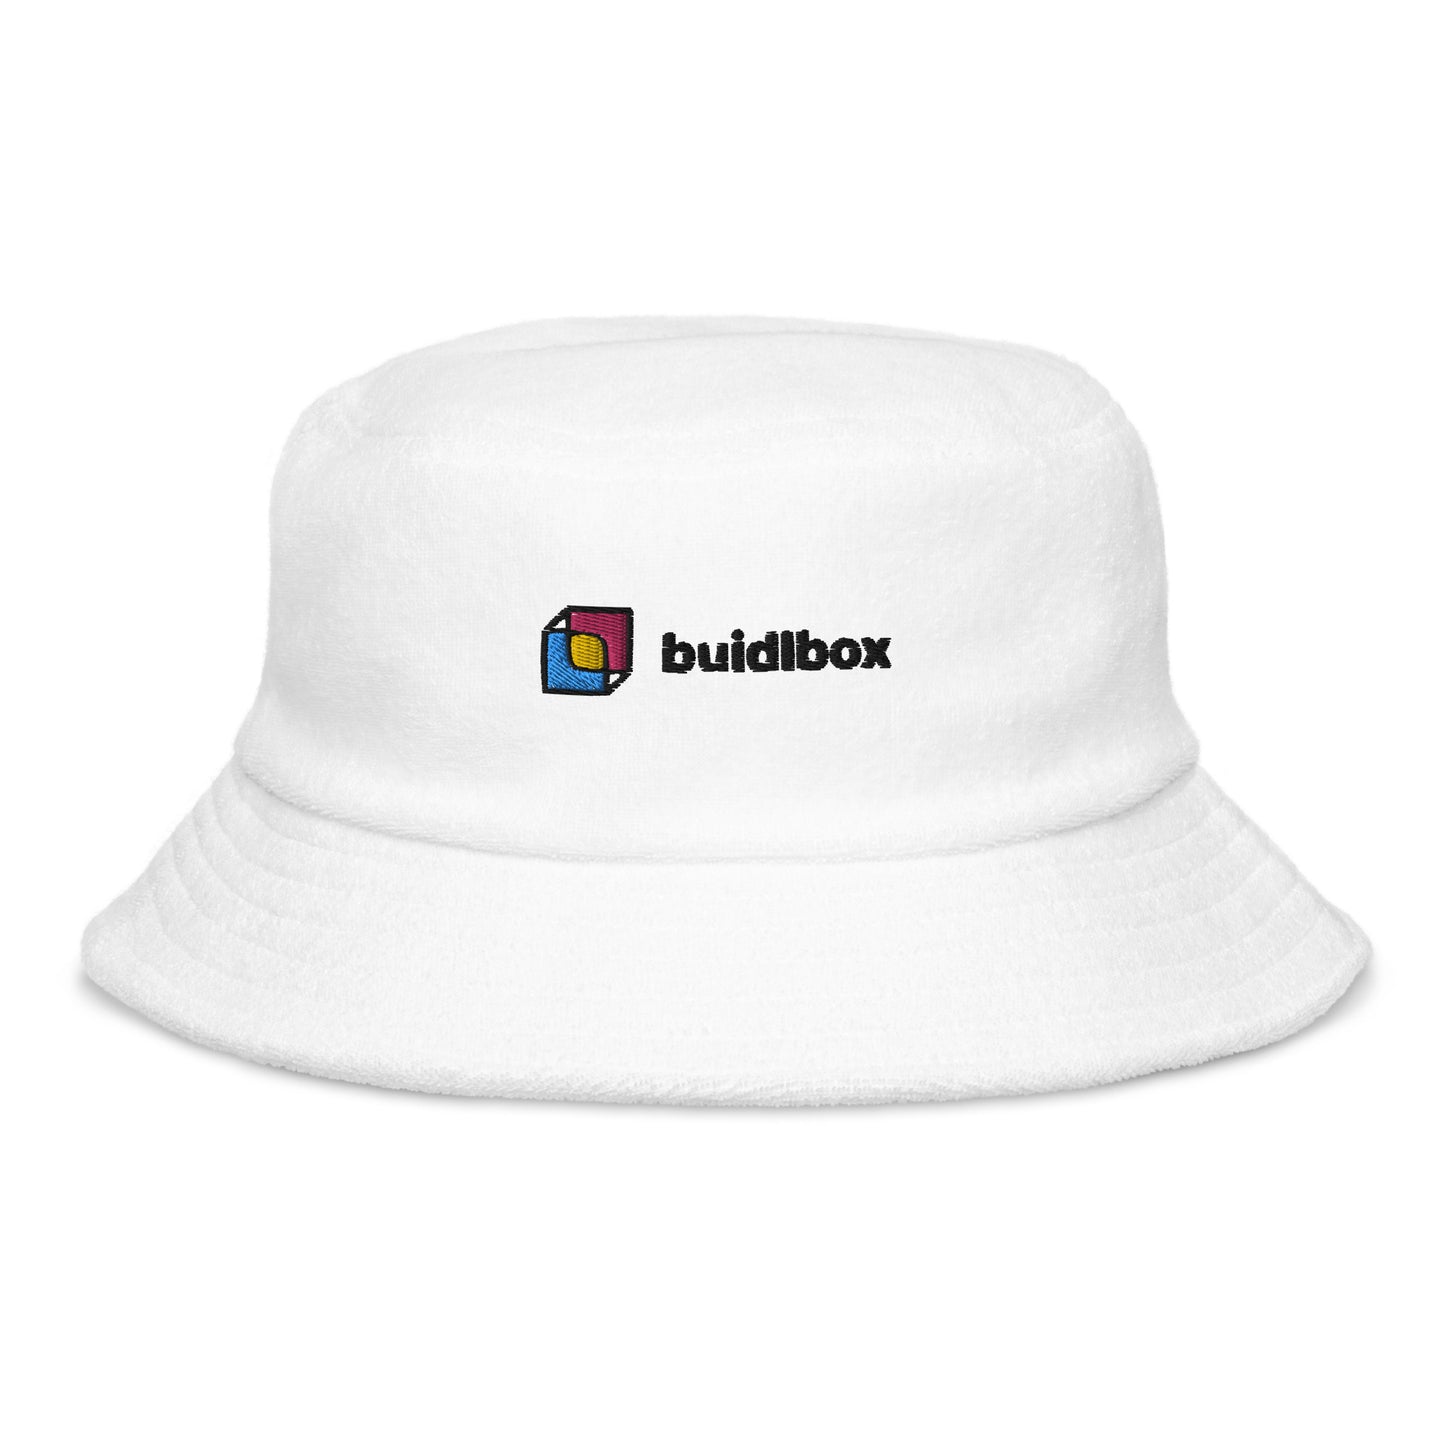 buidlbox bucket hat